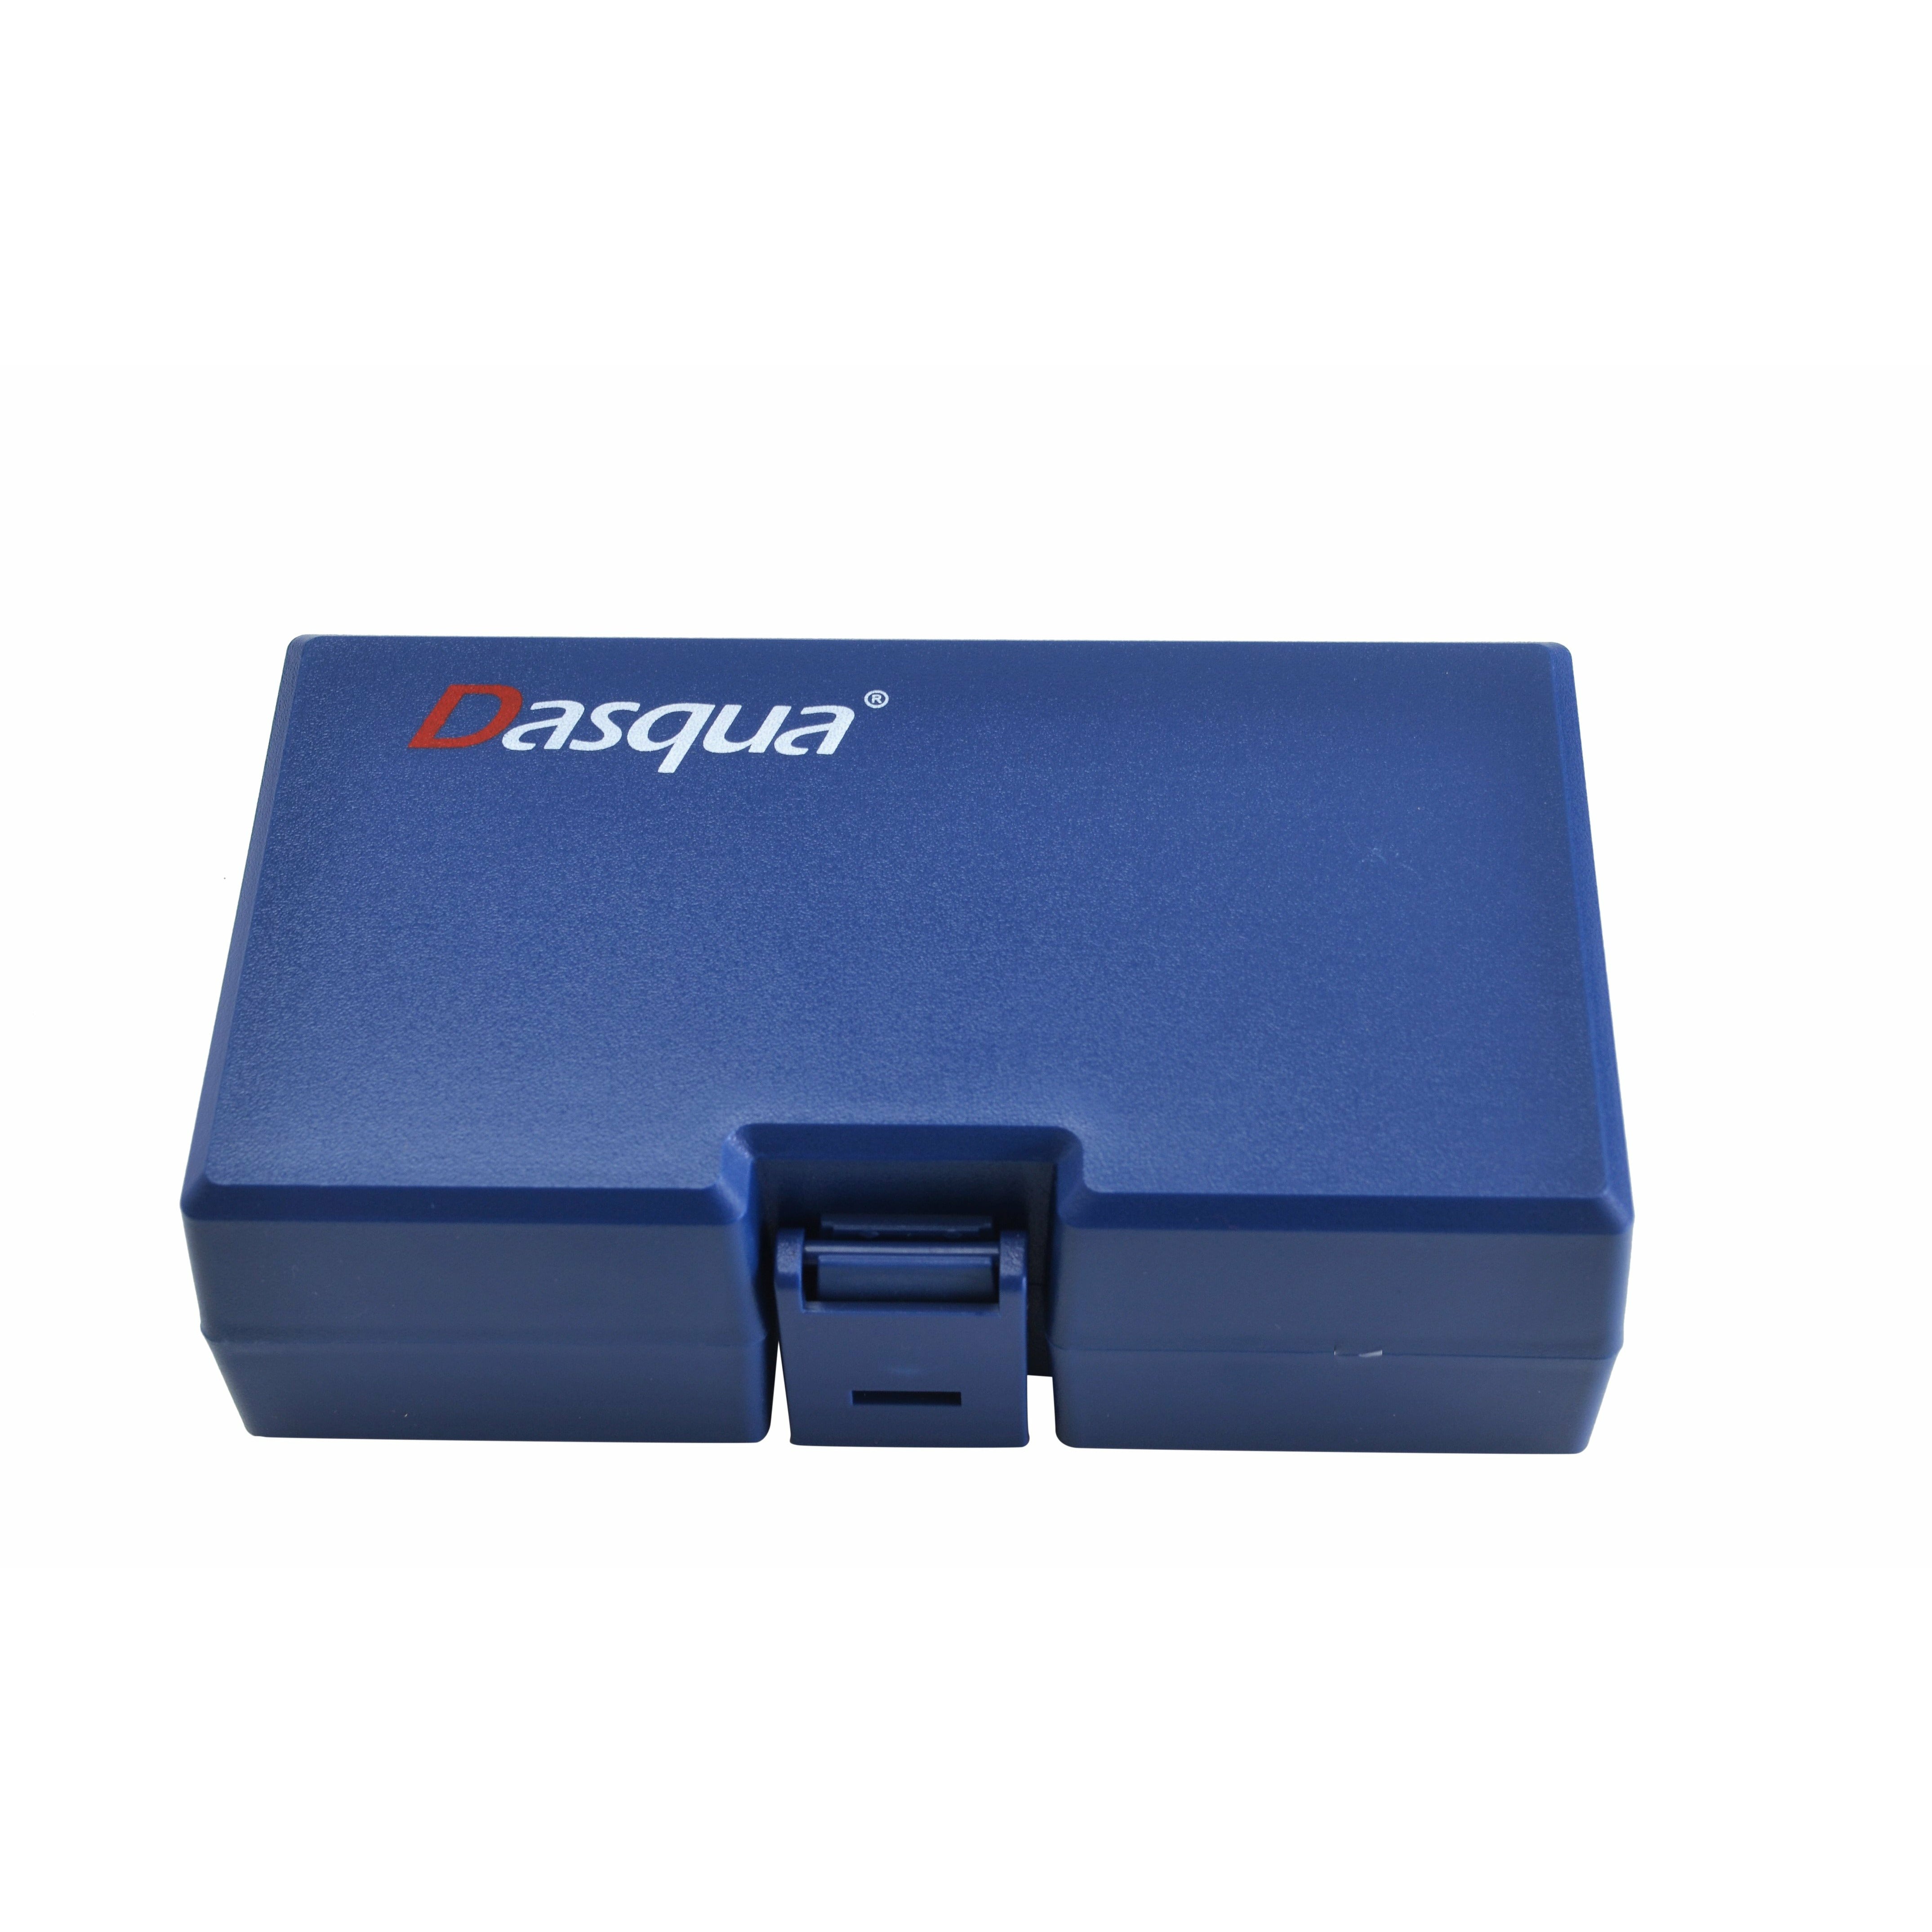 Dasqua 0-12.7mm/0-0.5"  Digital Indicator Series 5260-1105